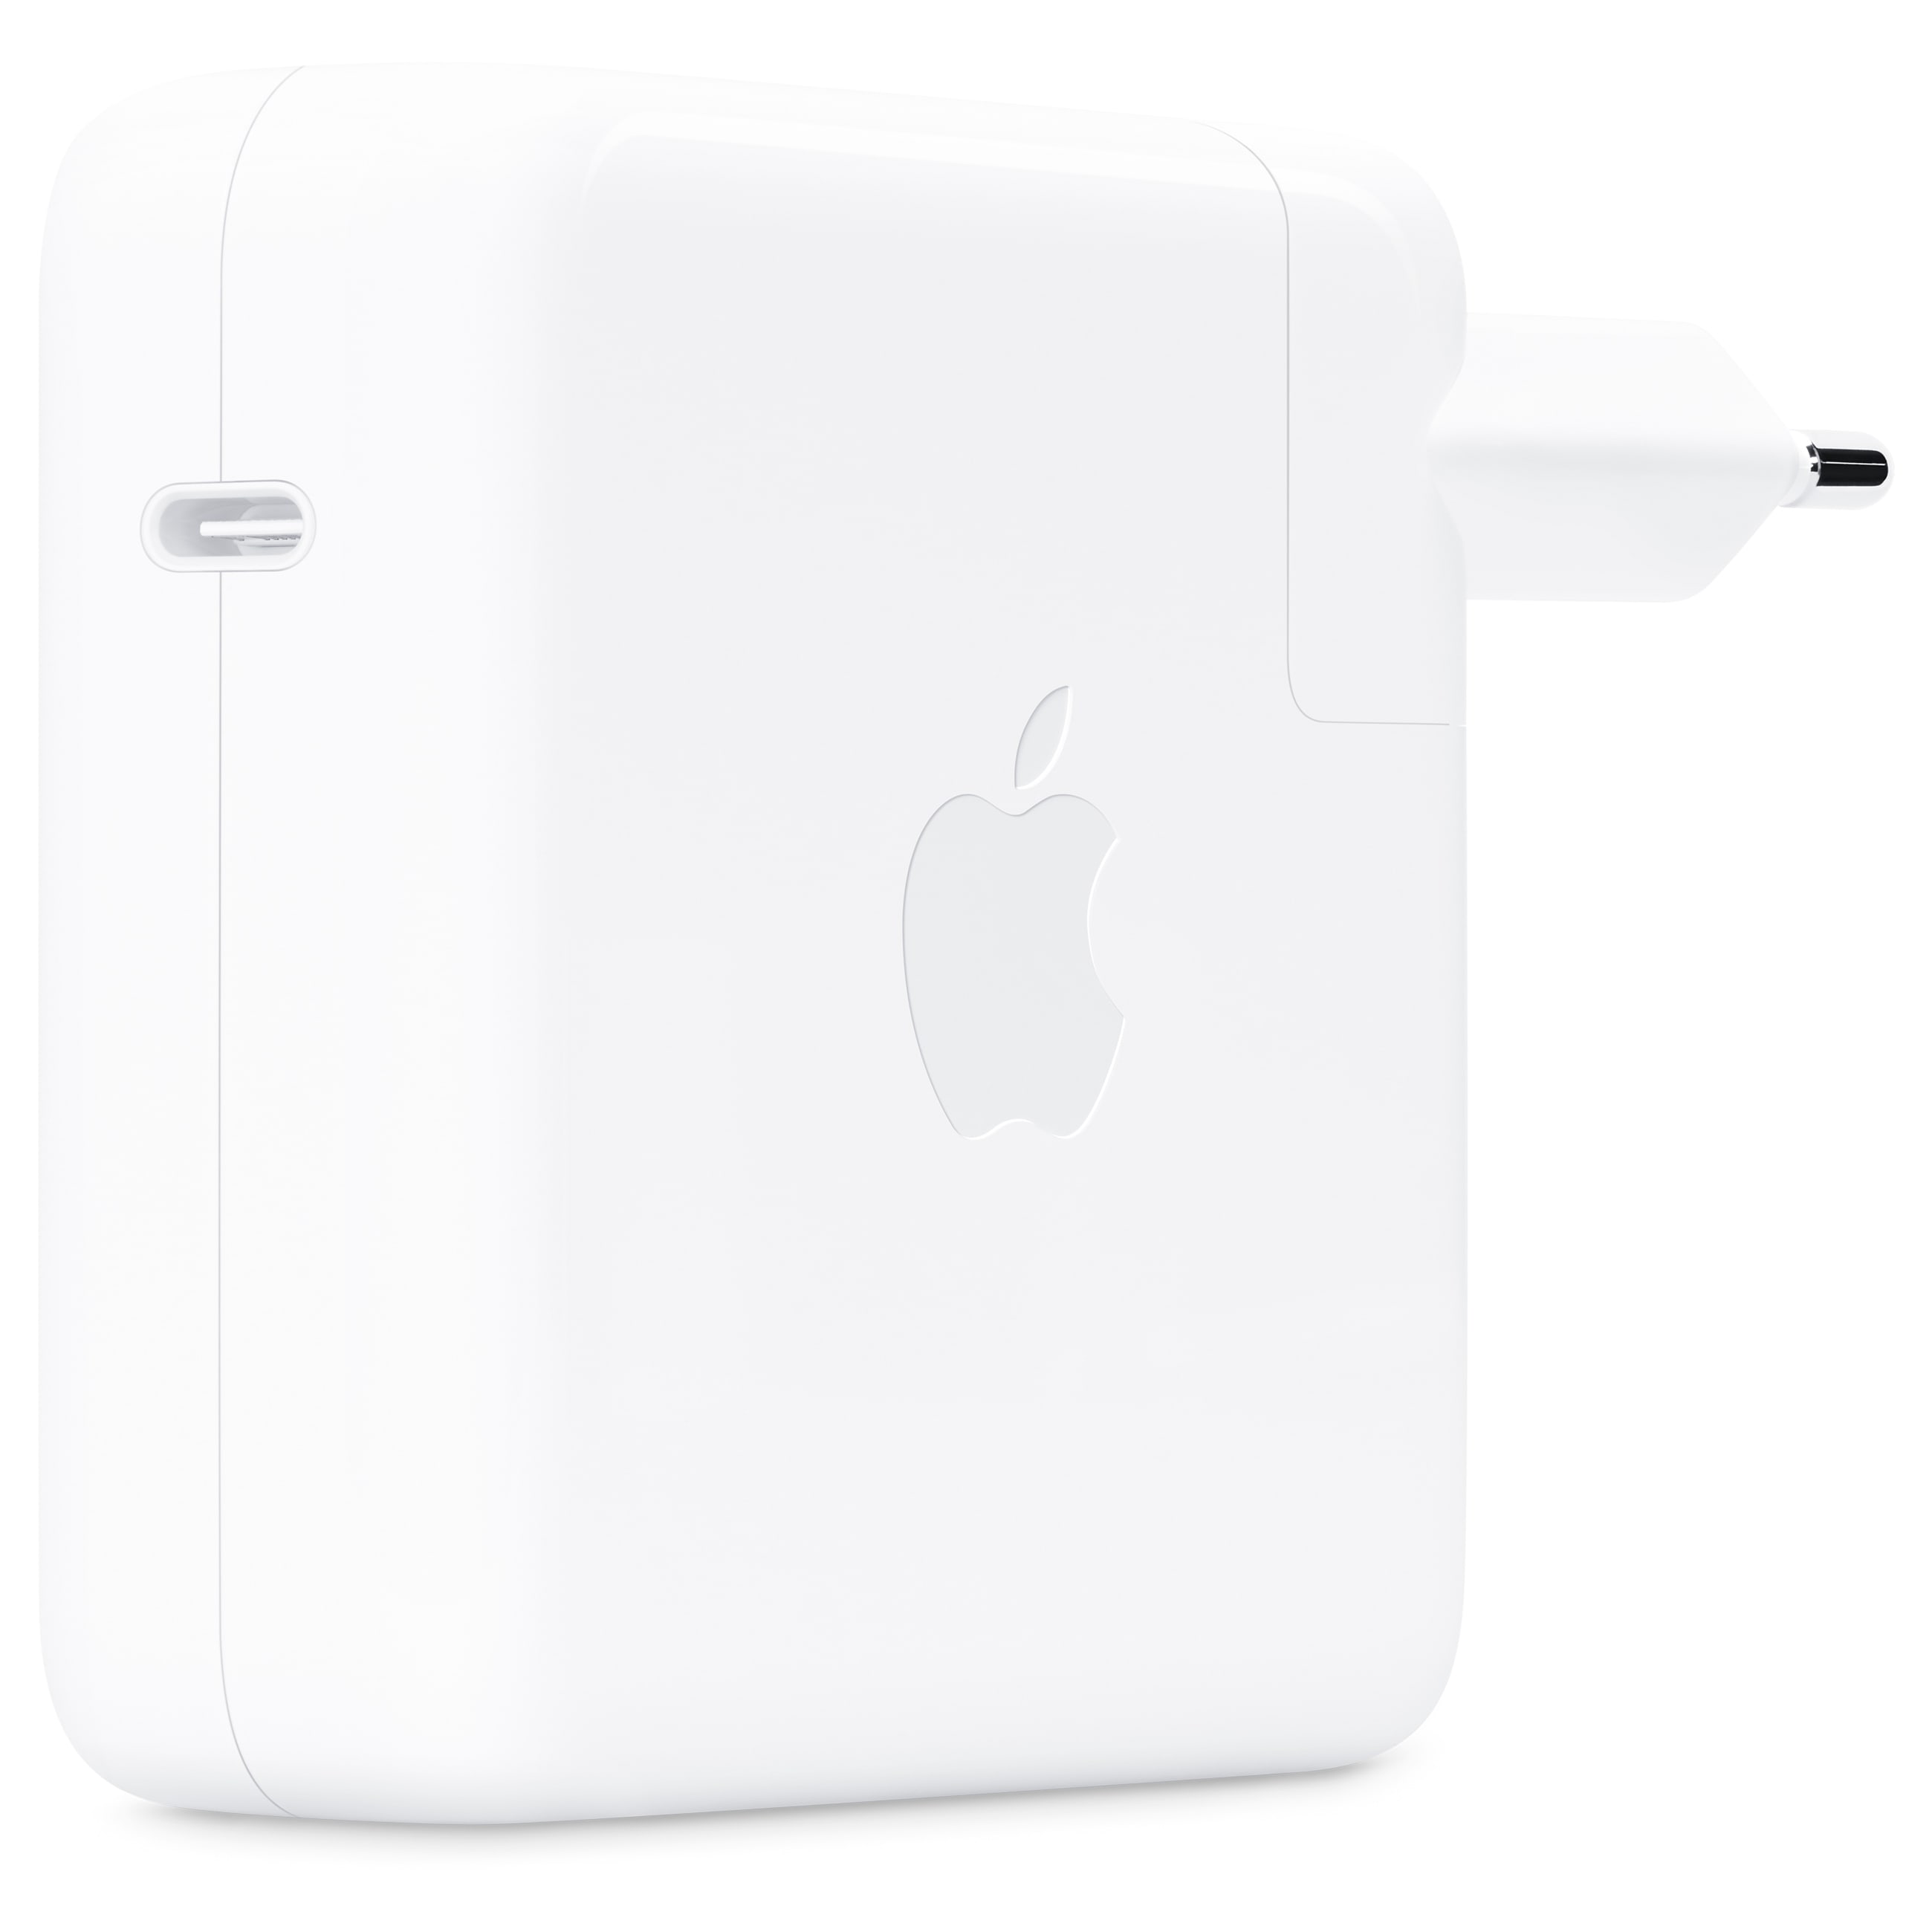 Apple USB-C Power Adapter - Ladegerät für 16" MacBook Pro - Weiß - Gebraucht